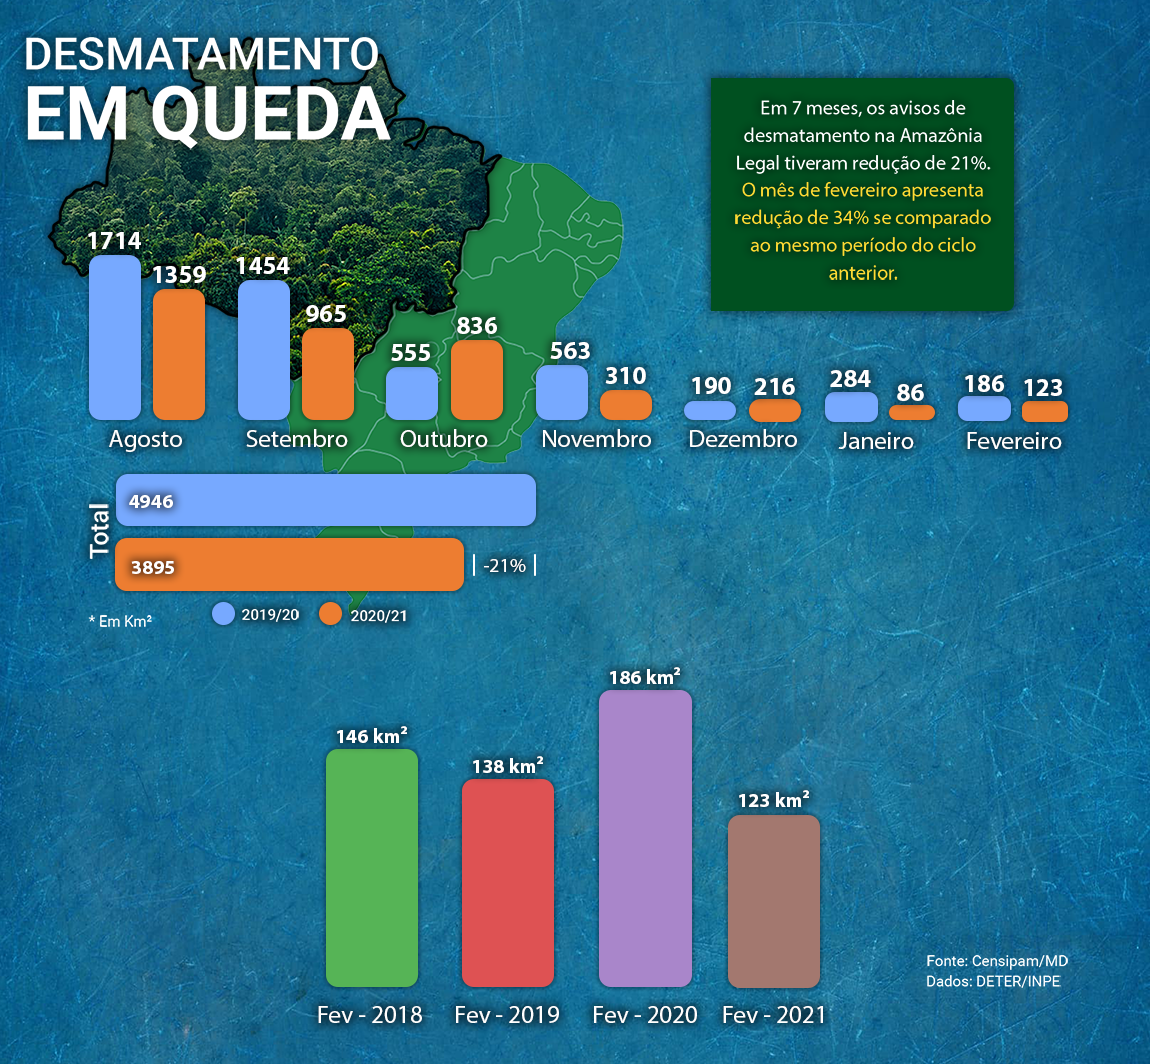 Desmatamento - Amazônia Legal - Atualizado 02.03.2021.png